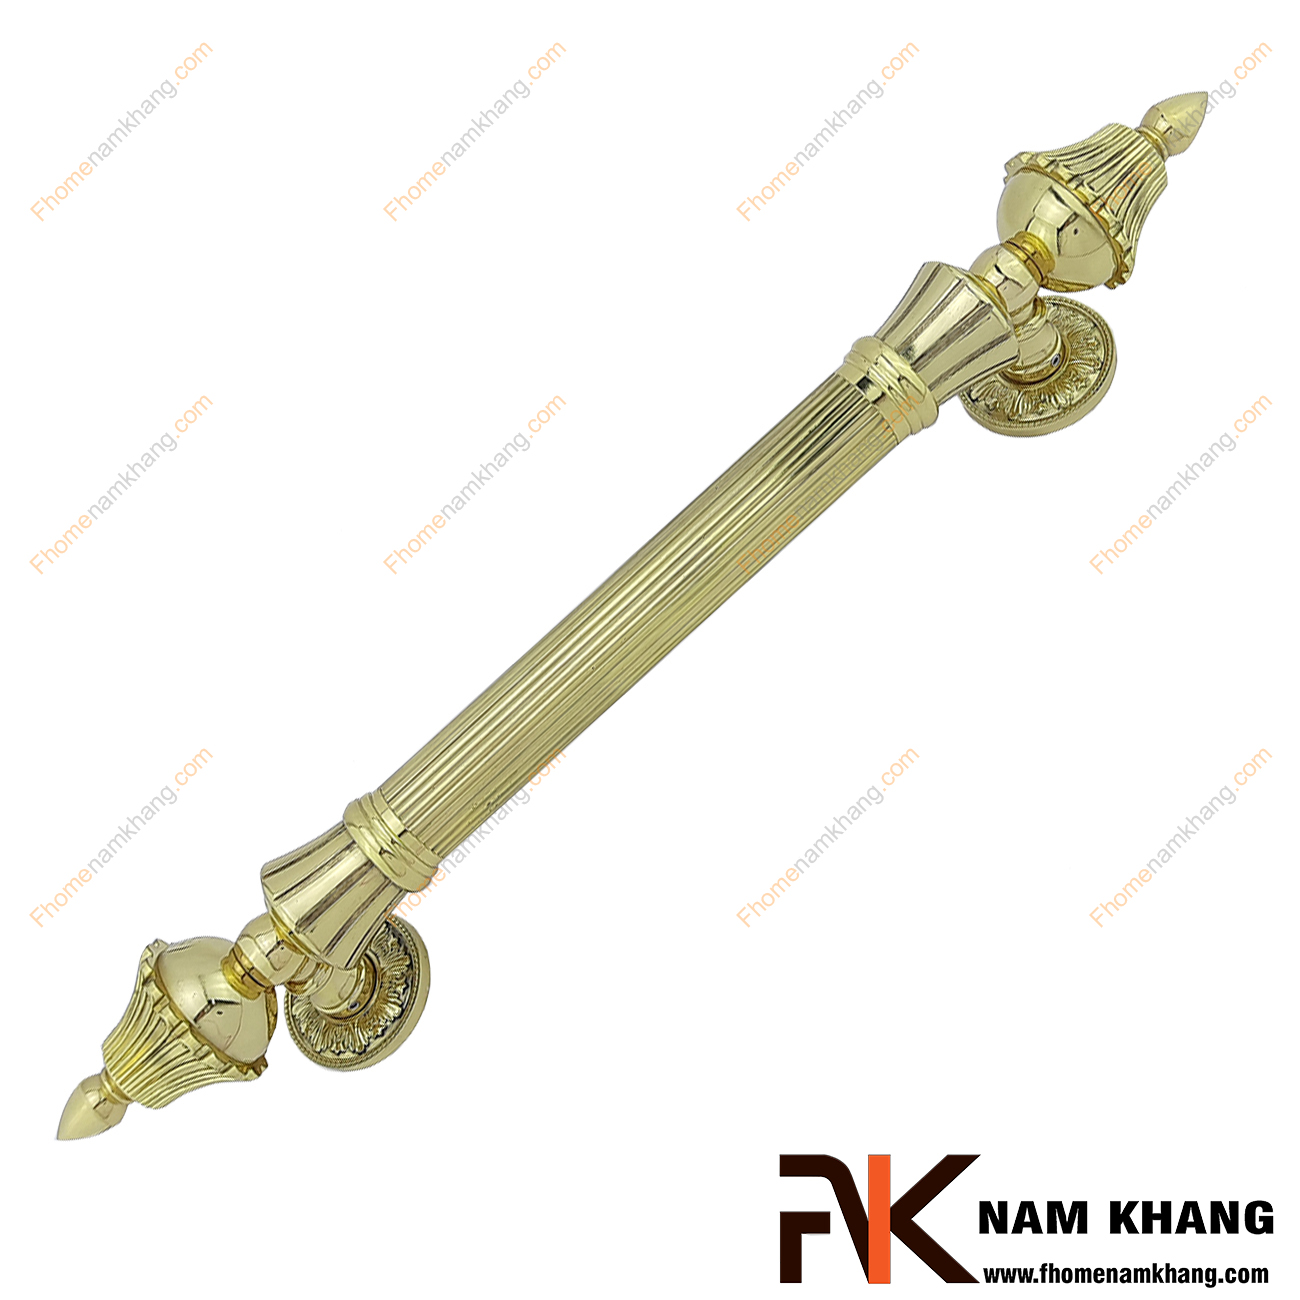 Tay nắm cửa chính dạng cổ điển màu đồng vàng NKD109-80VT được sản xuất từ đồng cao cấp, có kích thước lớn chuyên dùng cho các dạng cửa ra vào lớn, cửa sảnh, cửa cao cấp 2 hoặc 4 cánh.